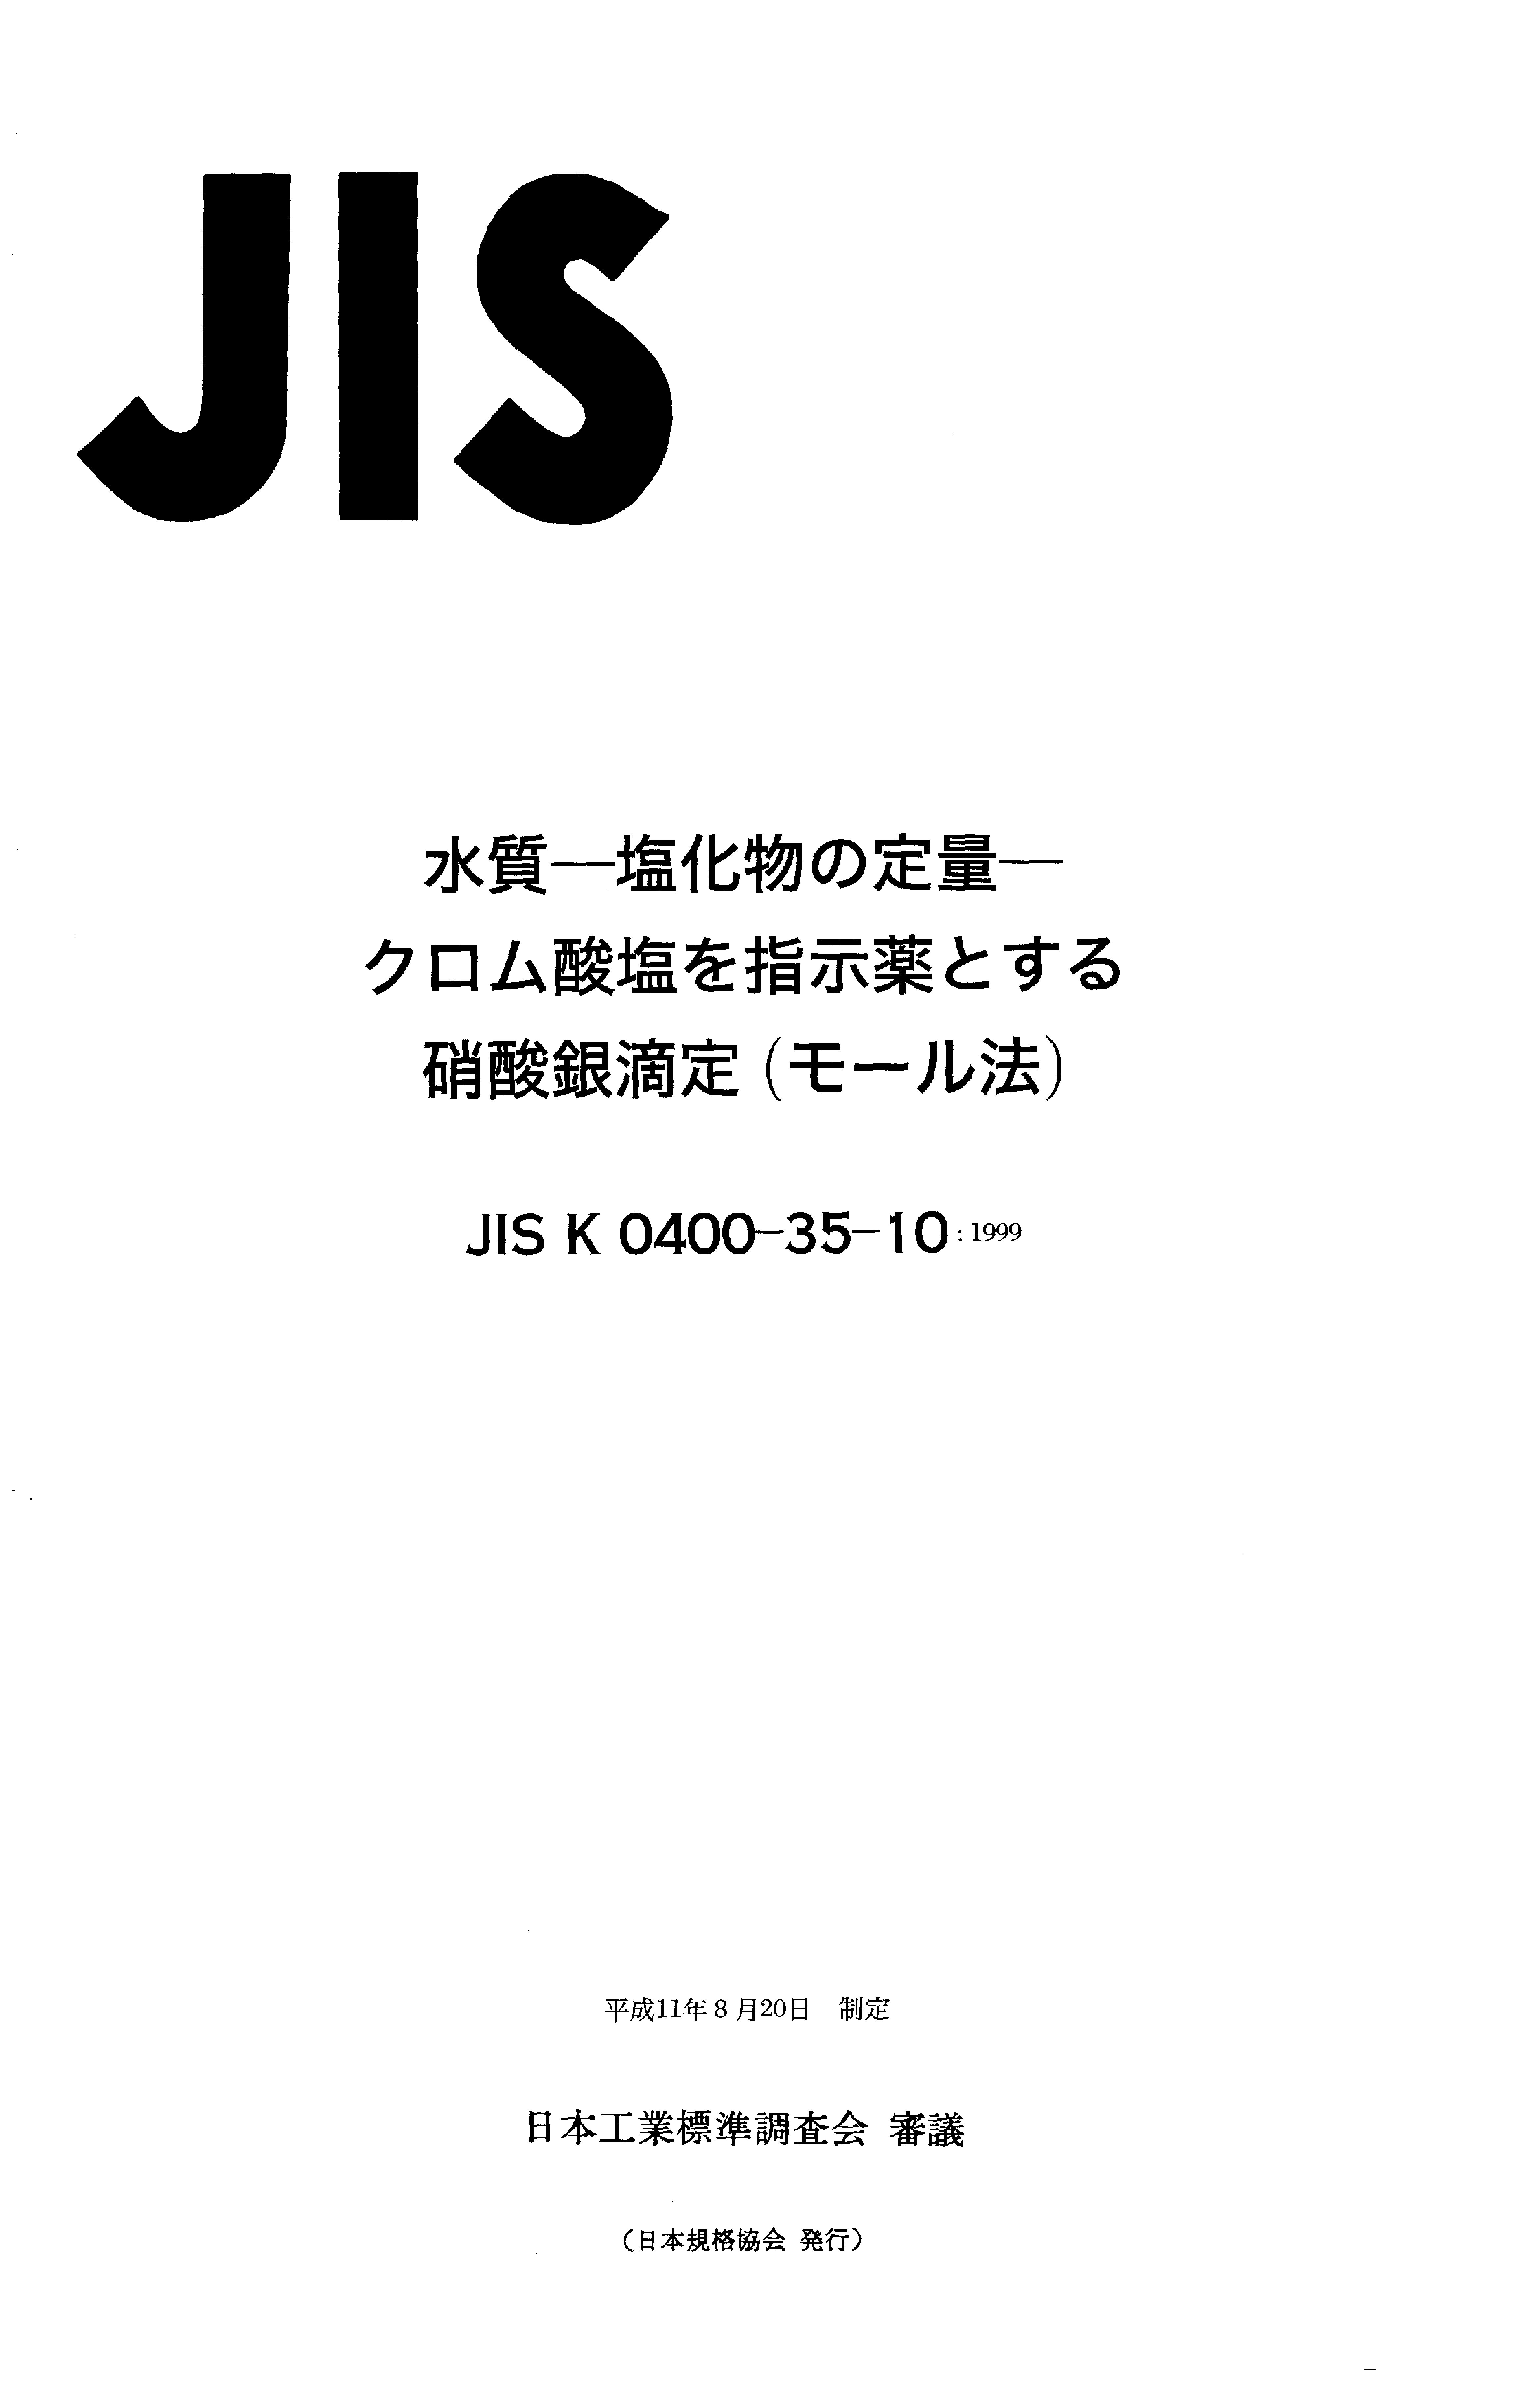 JIS K 0400-35-10:1999封面图